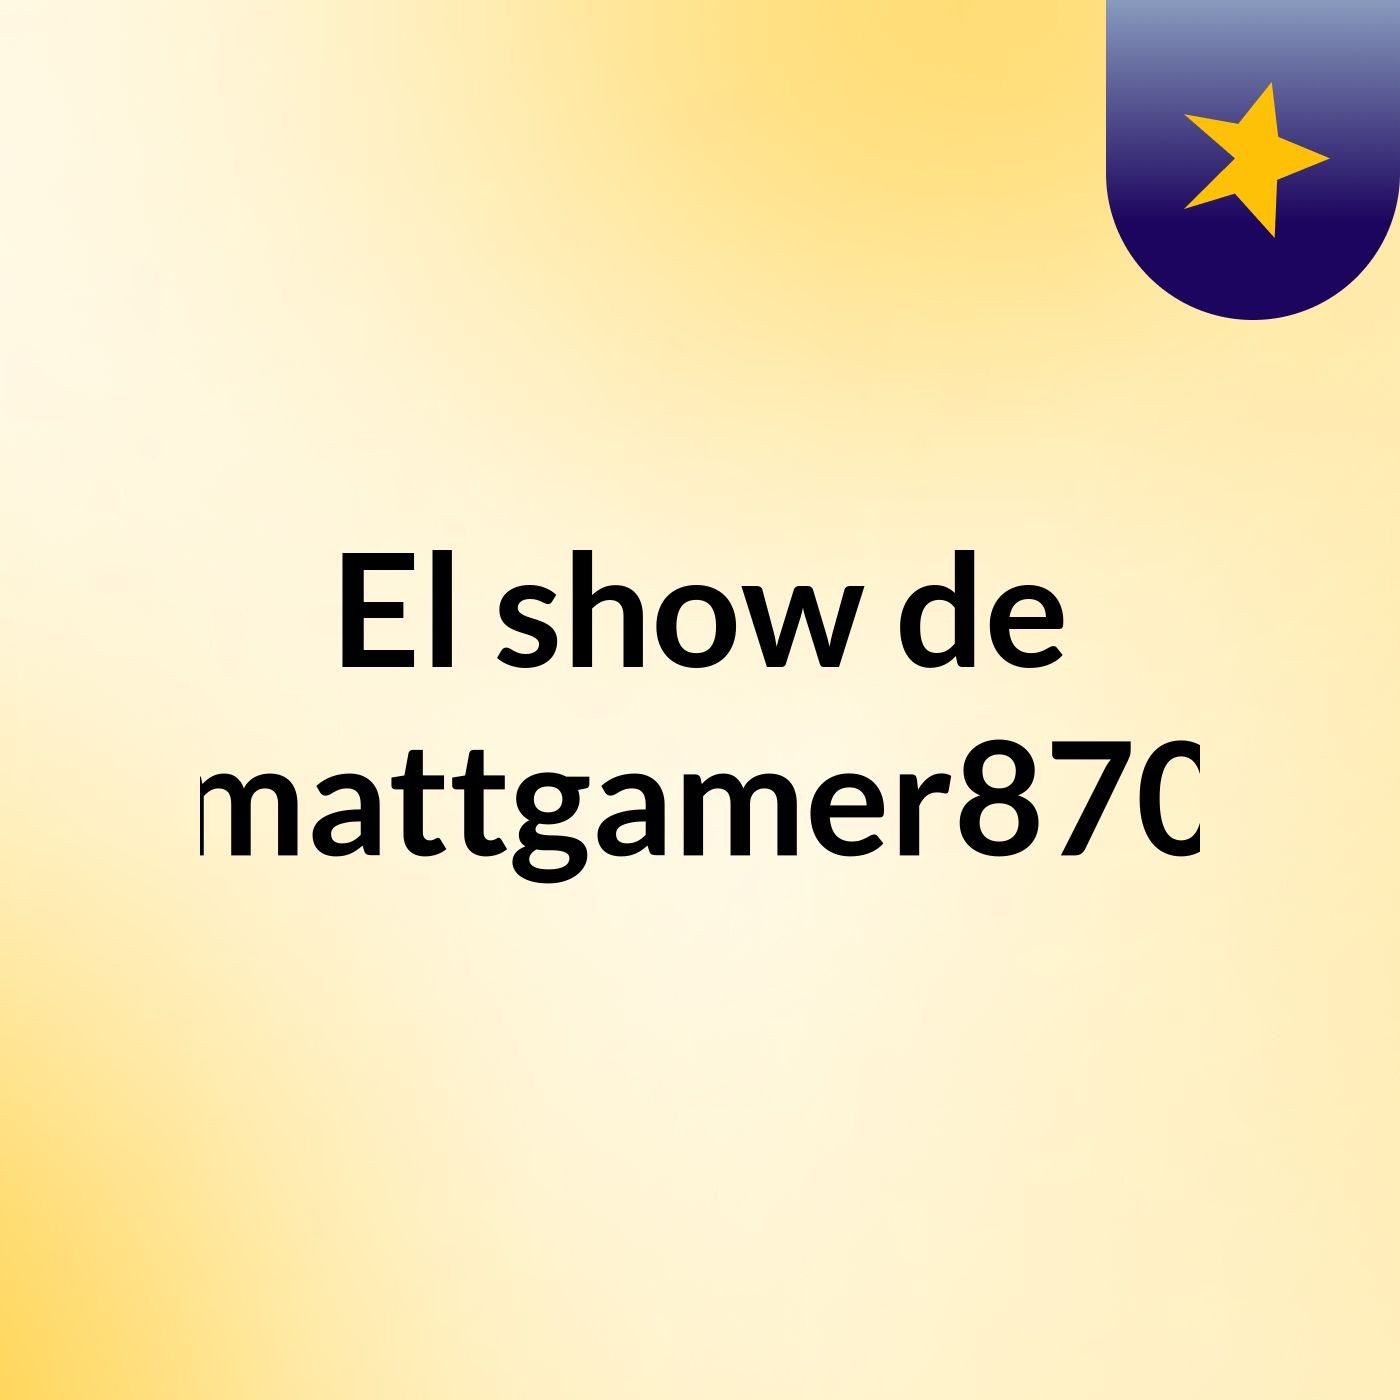 El show de mattgamer870